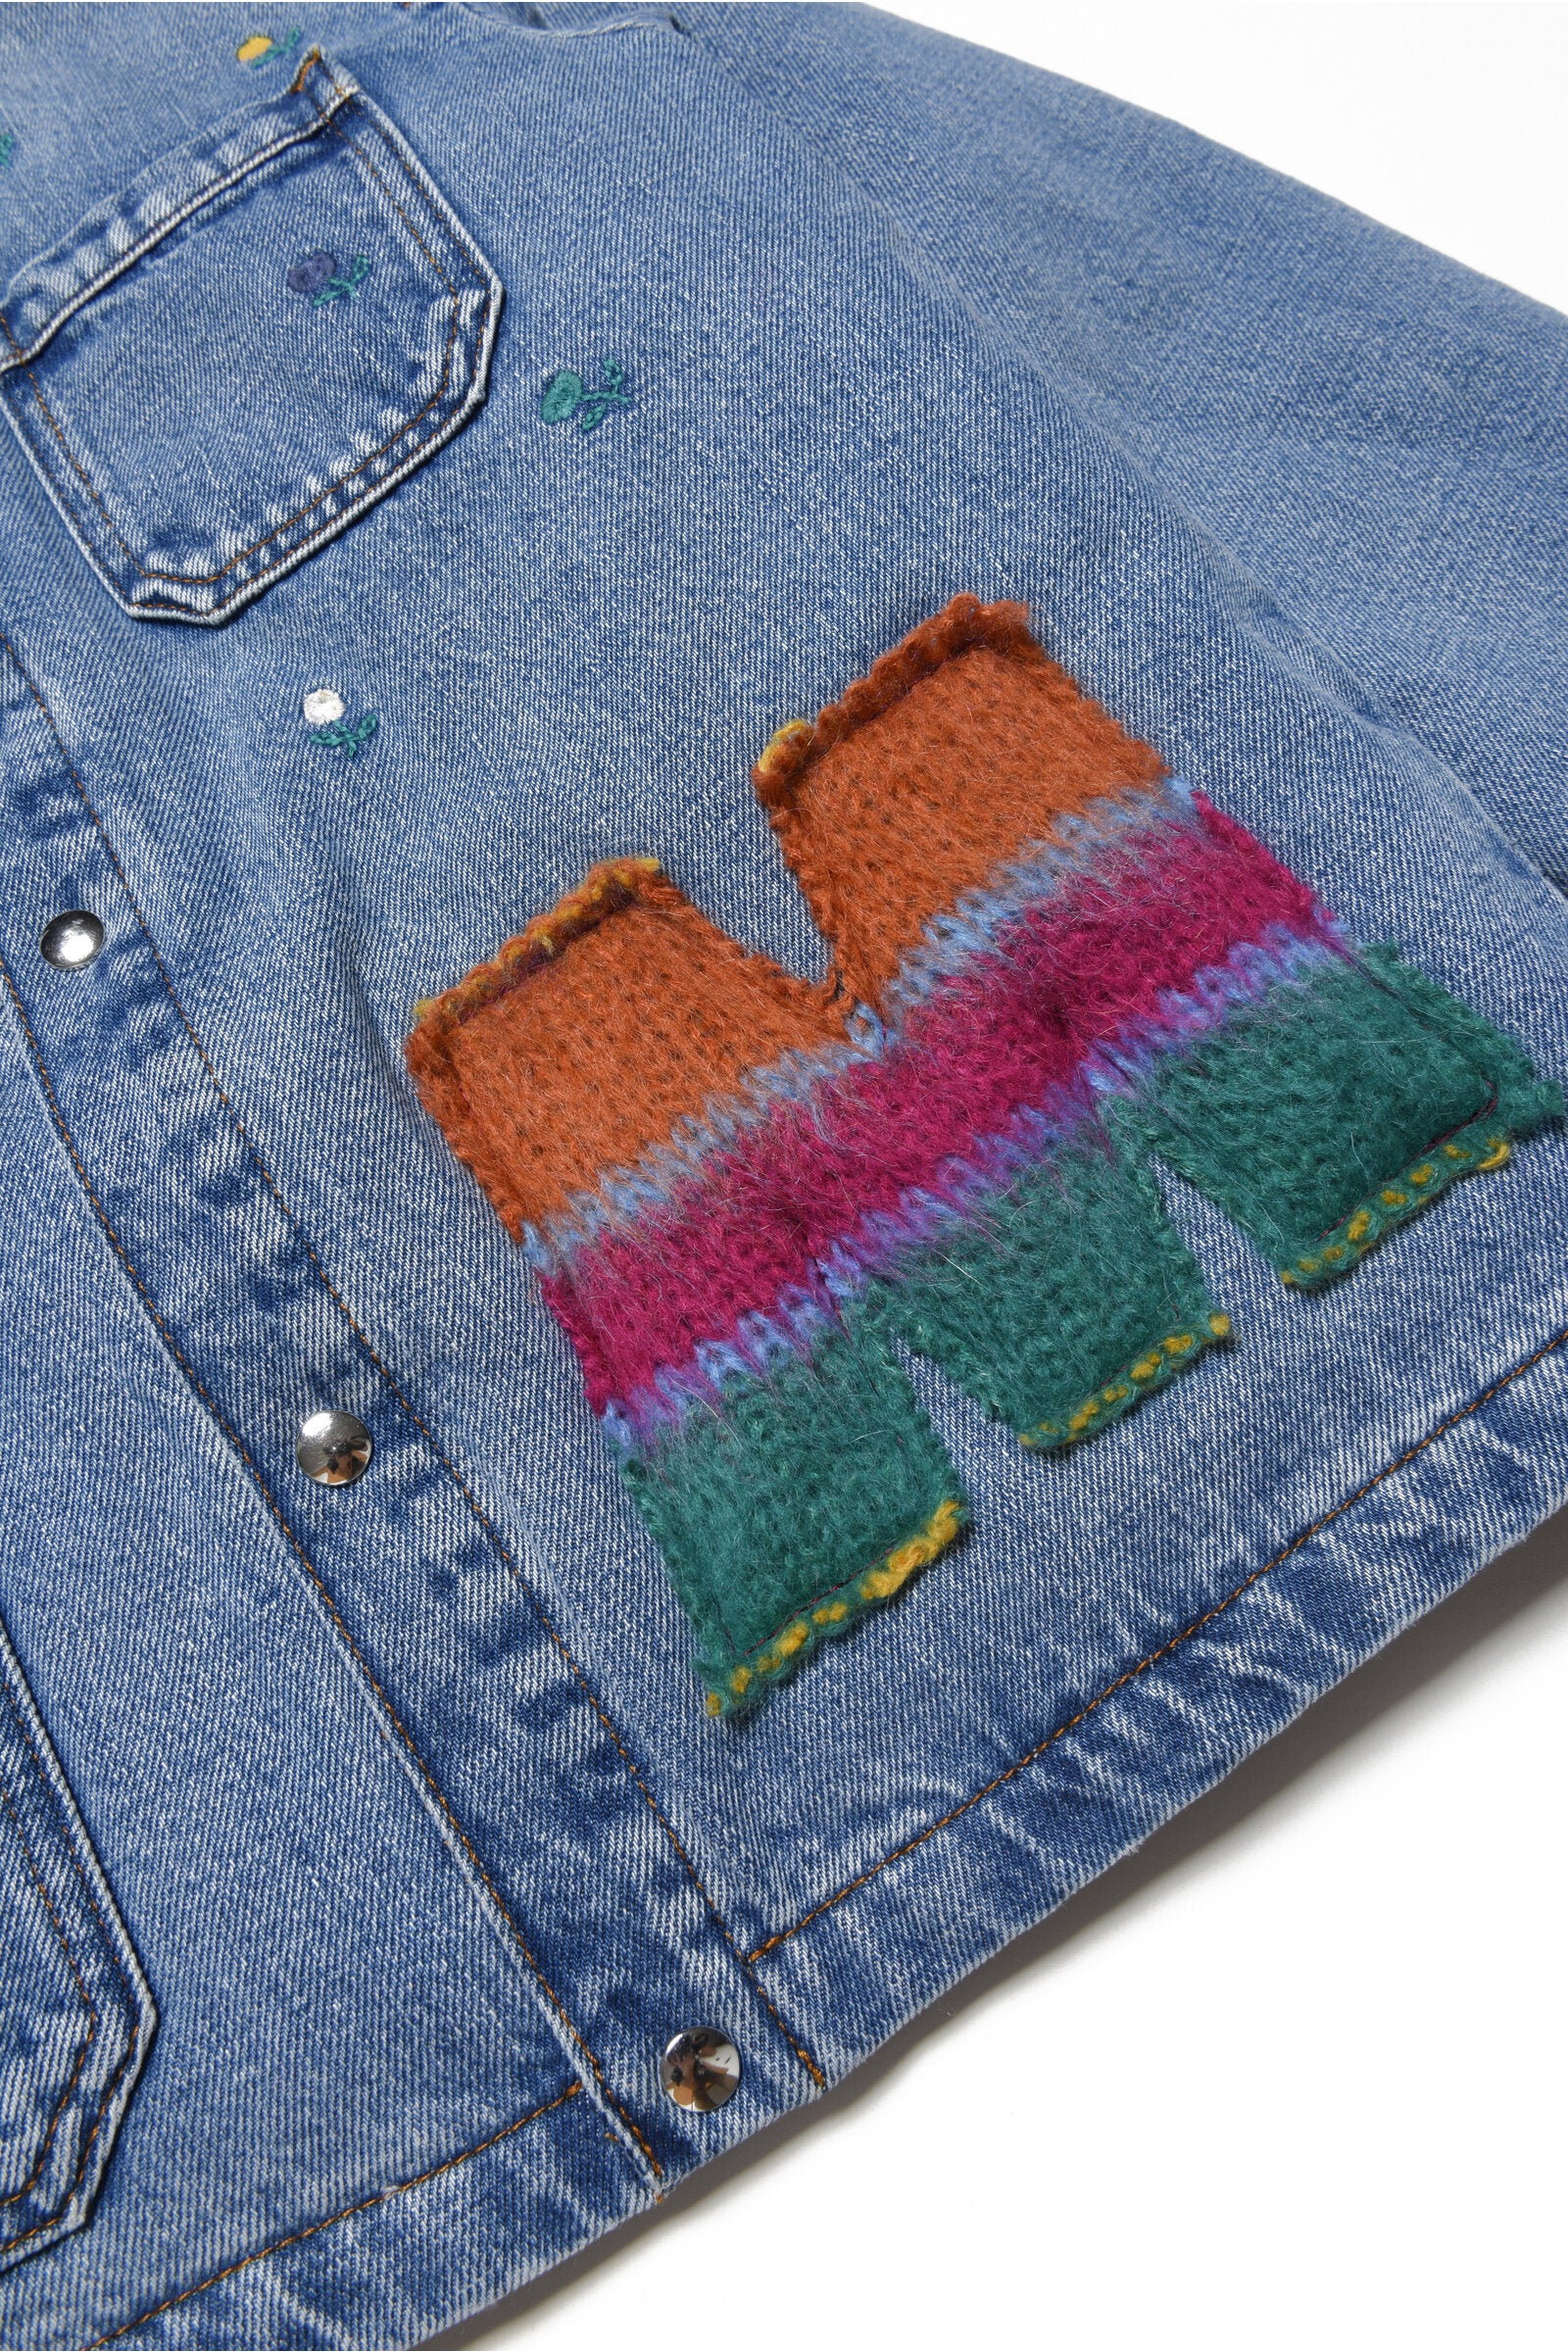 花とパッチの刺繍が施されたライトブルーのジーンズジャケット